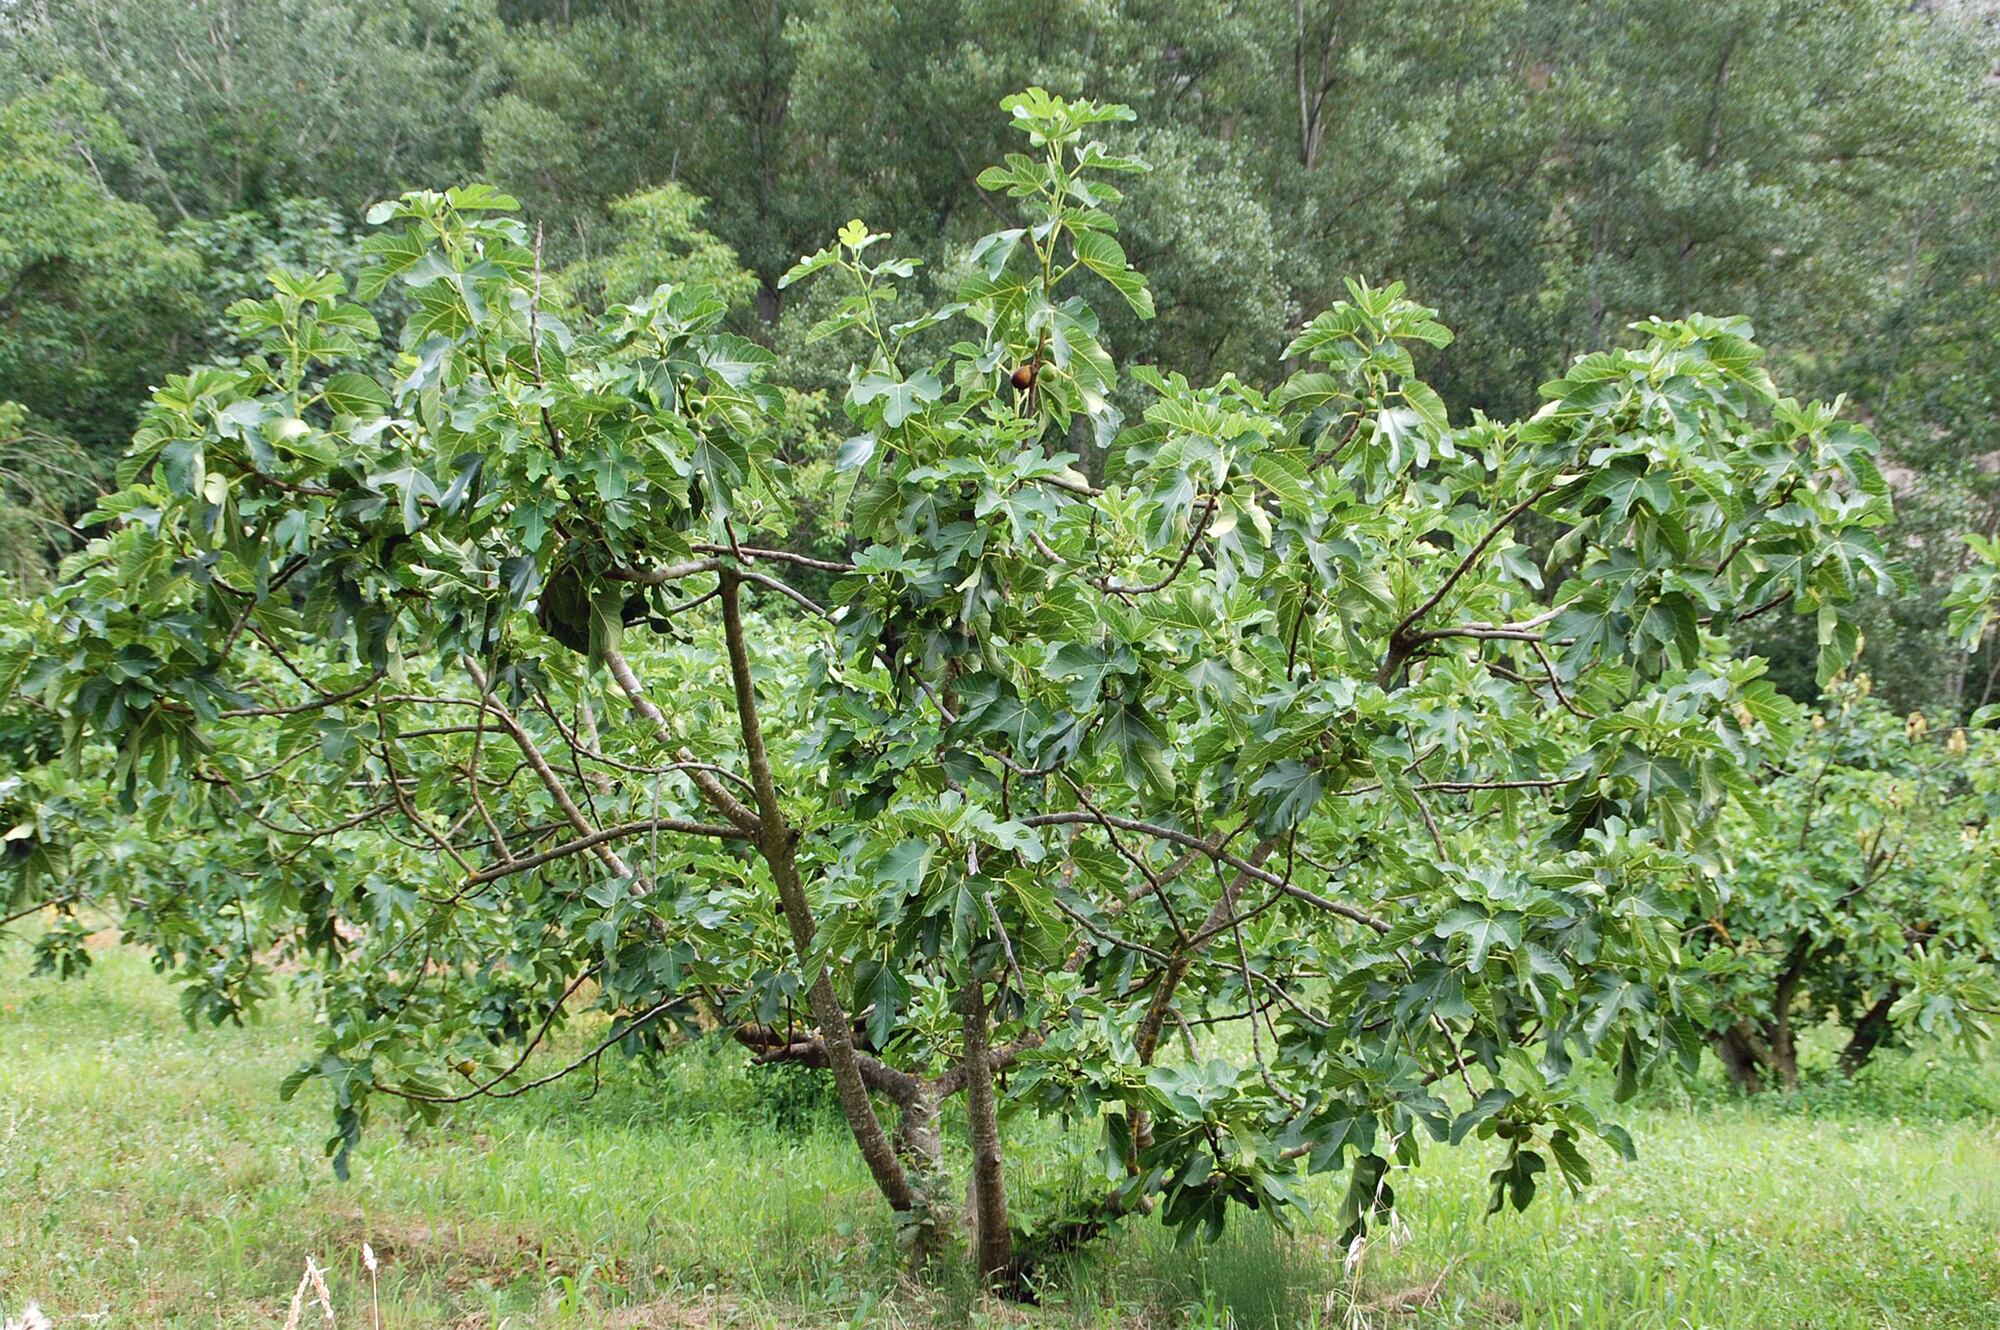 La higuera es un árbol muy rústico que no requiere mayores cuidadaos, soporta algo de frío y se adapta a terrenos secos y pedregosos